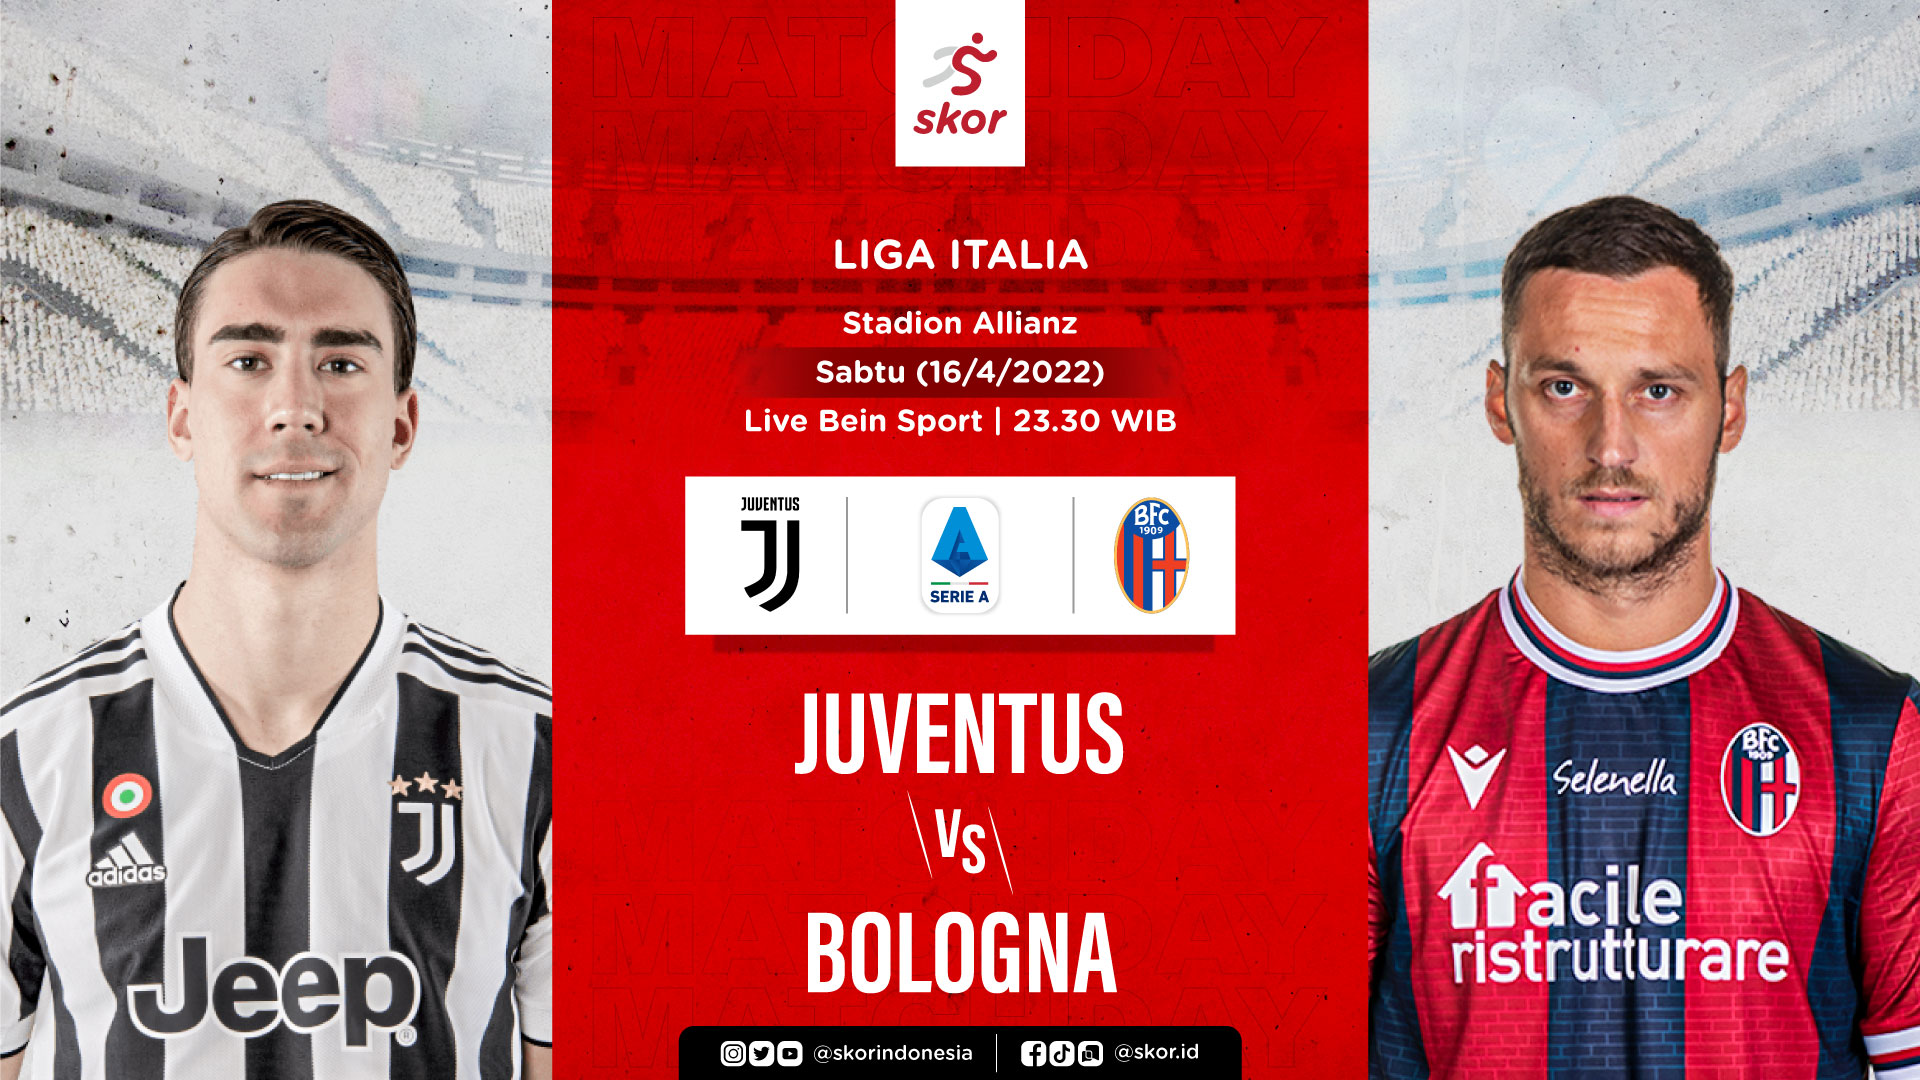  Link Live Streaming Juventus vs Bologna di LIga Italia